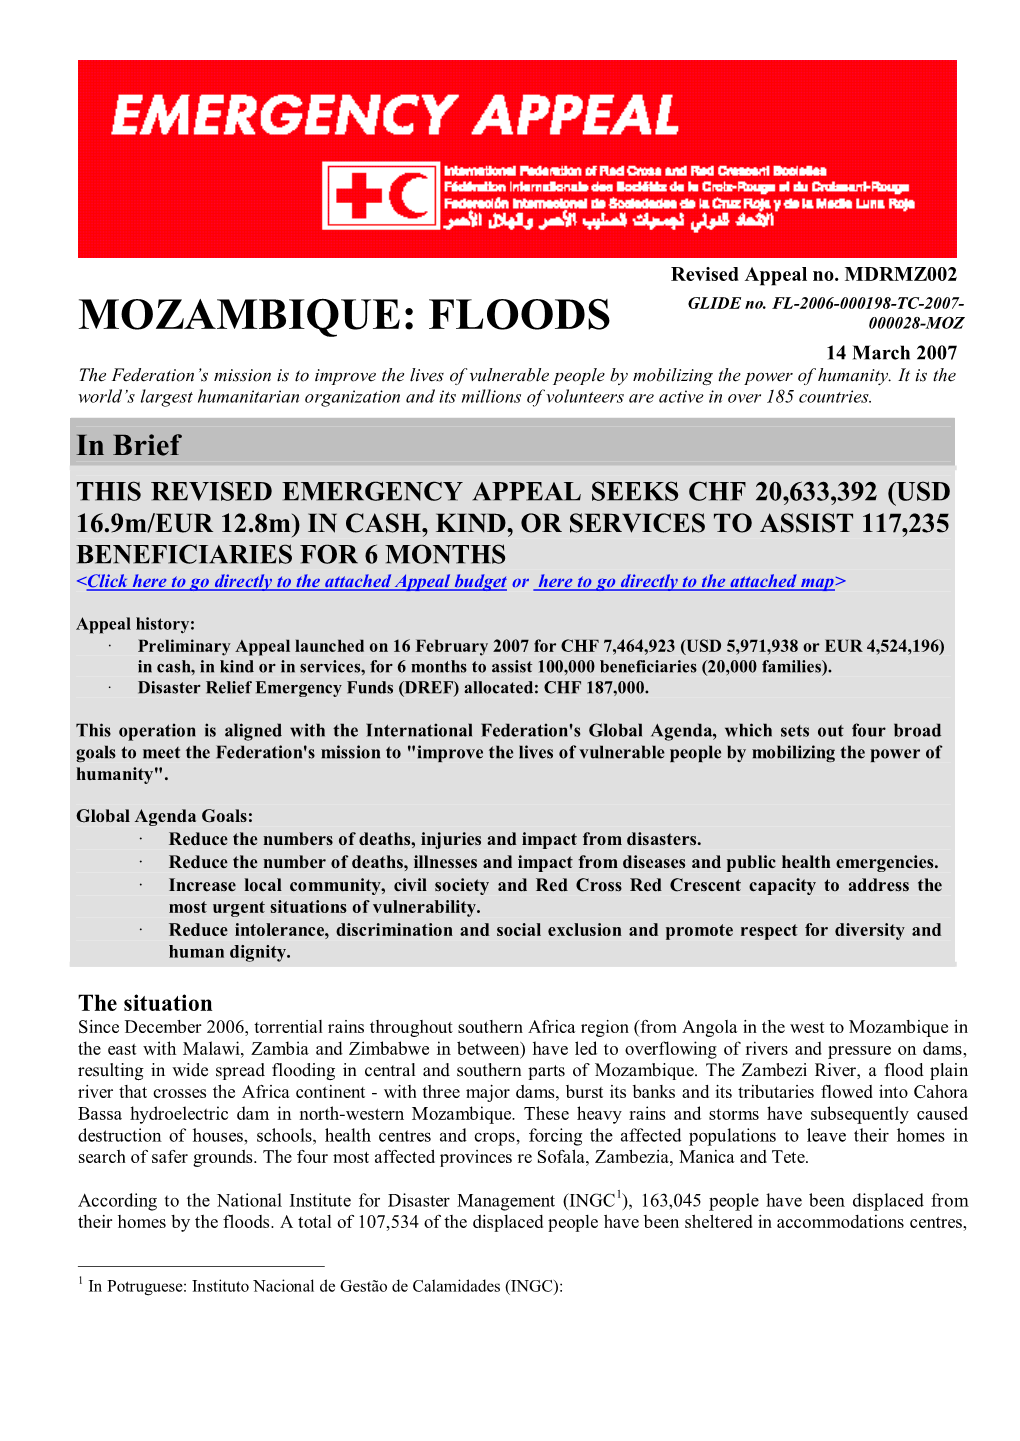 Mozambique: Floods 000028-Moz